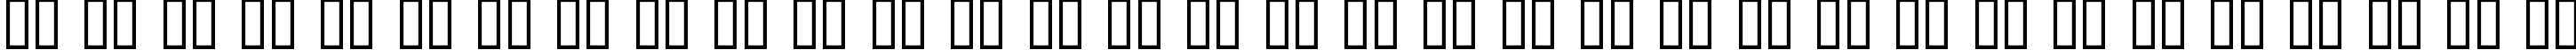 Пример написания русского алфавита шрифтом imitationDemo